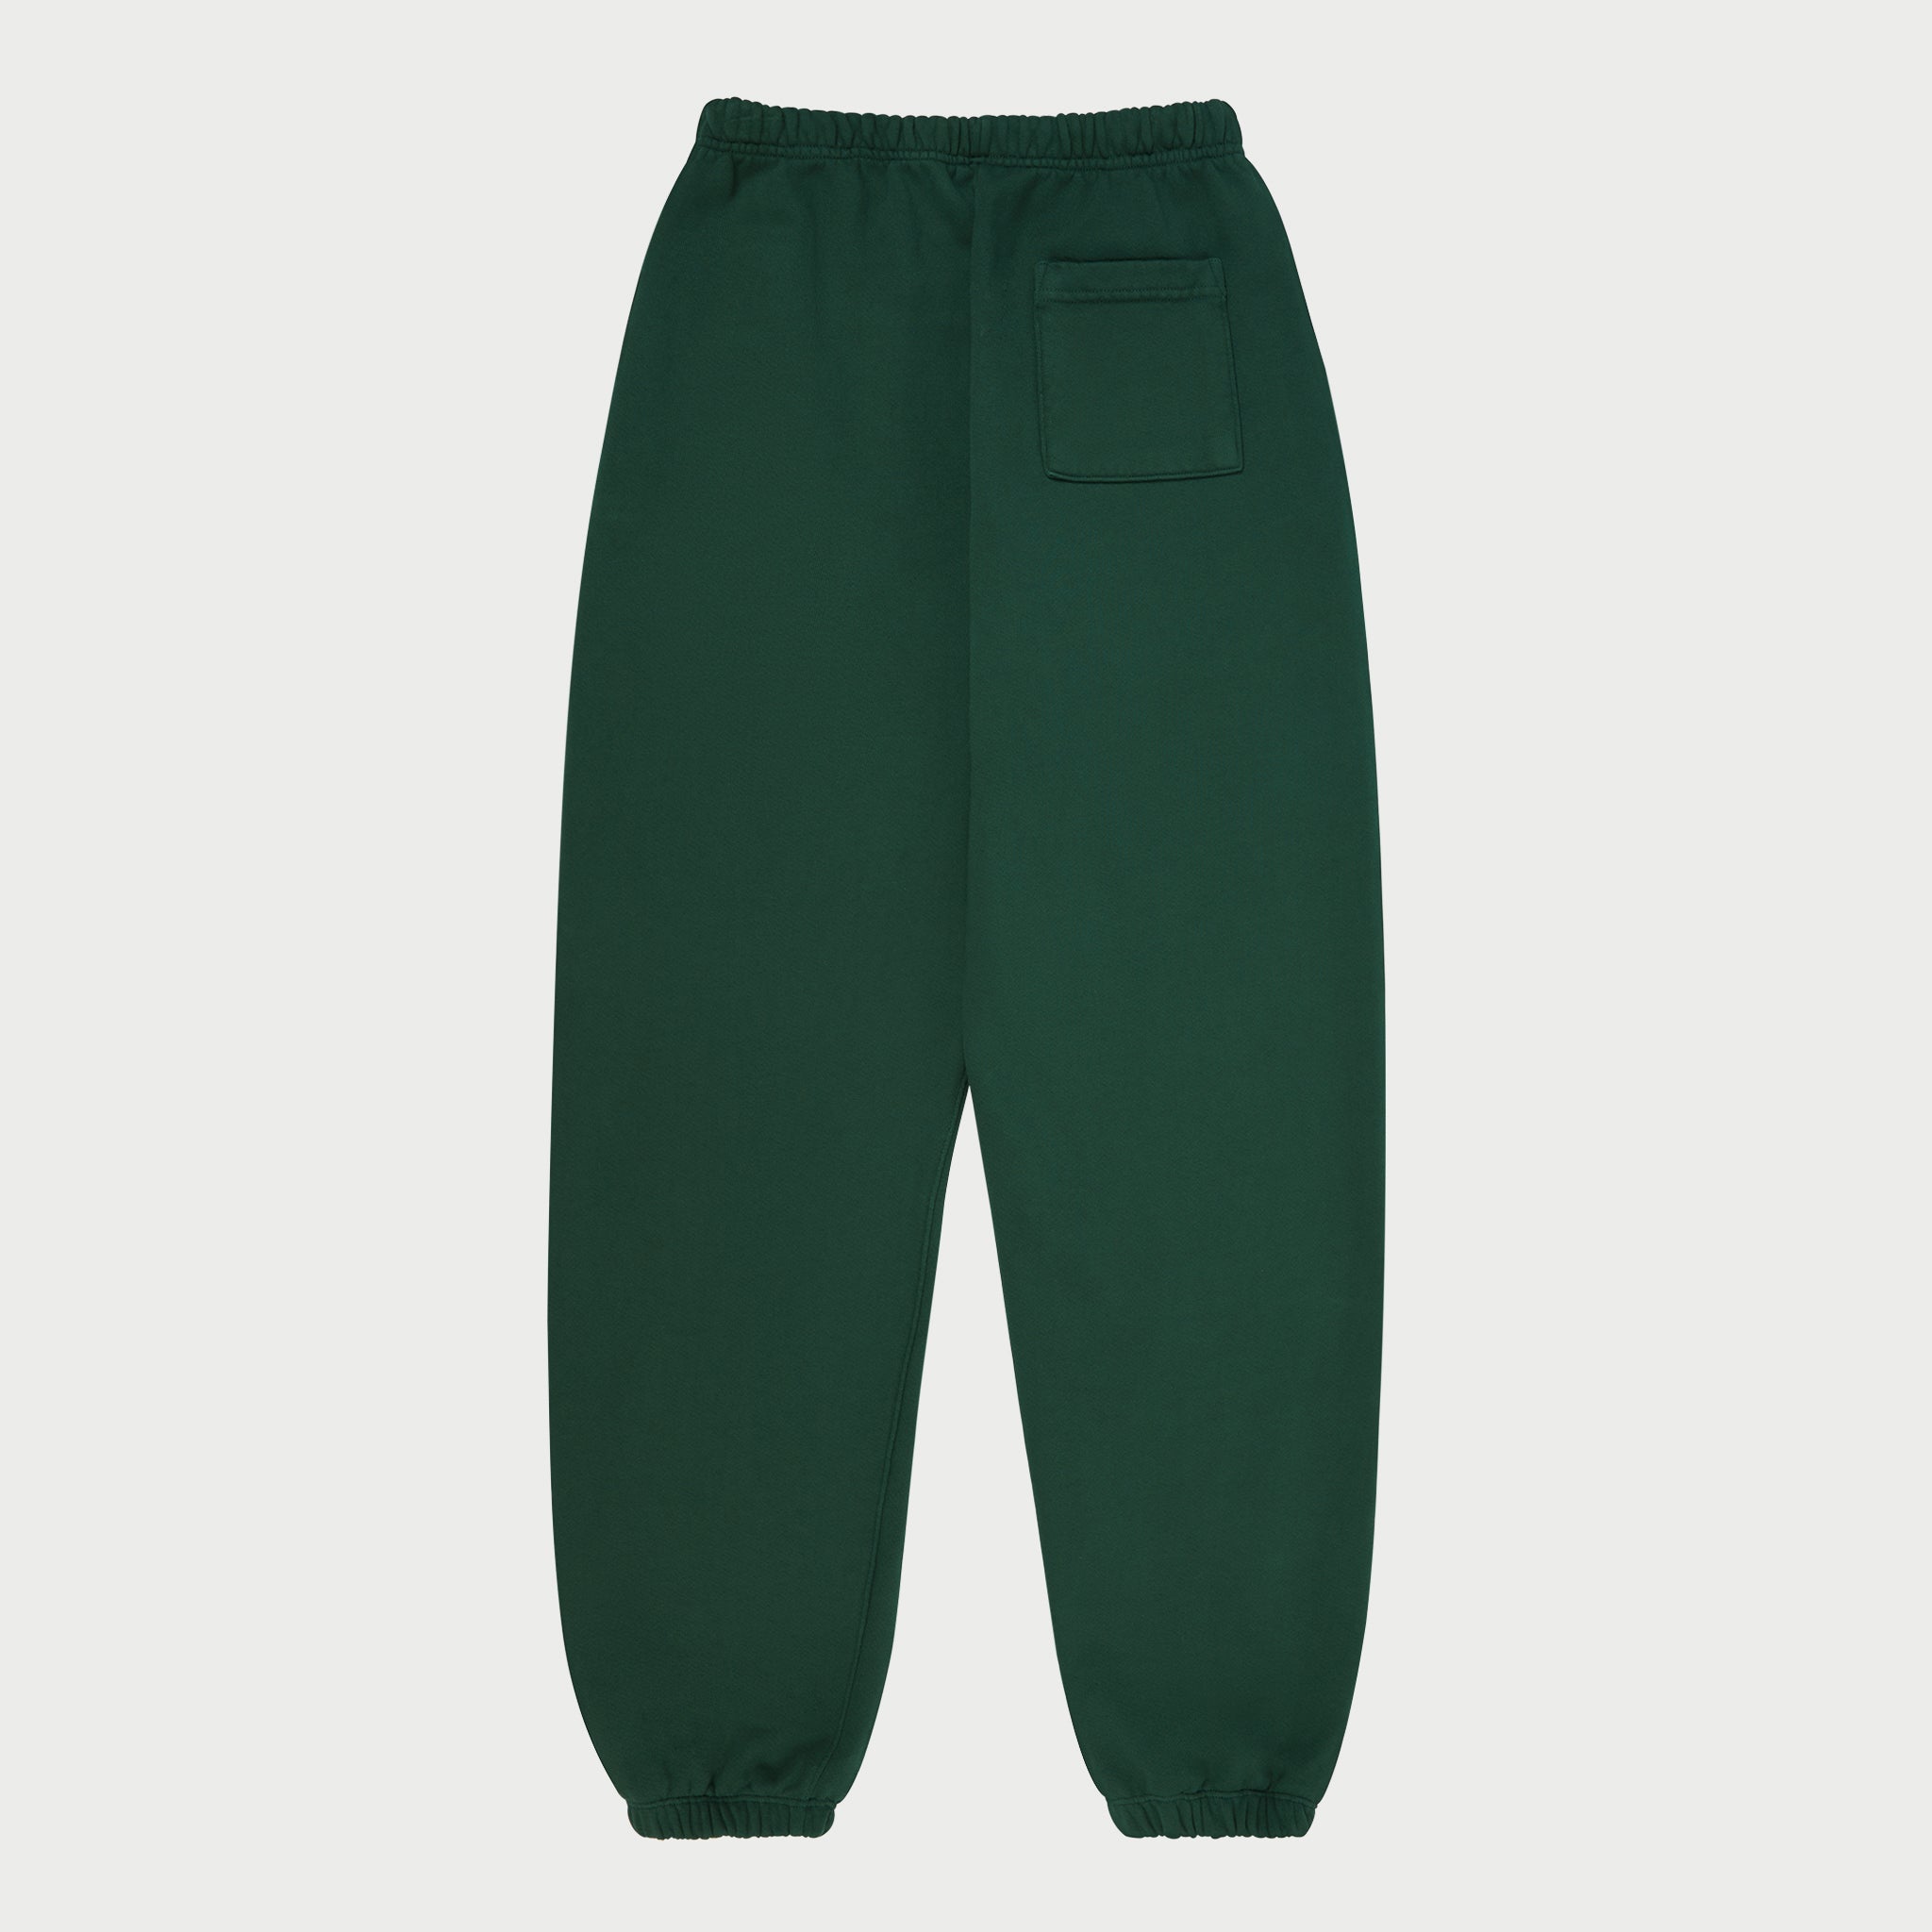 American Classic Sweatpants (Green)